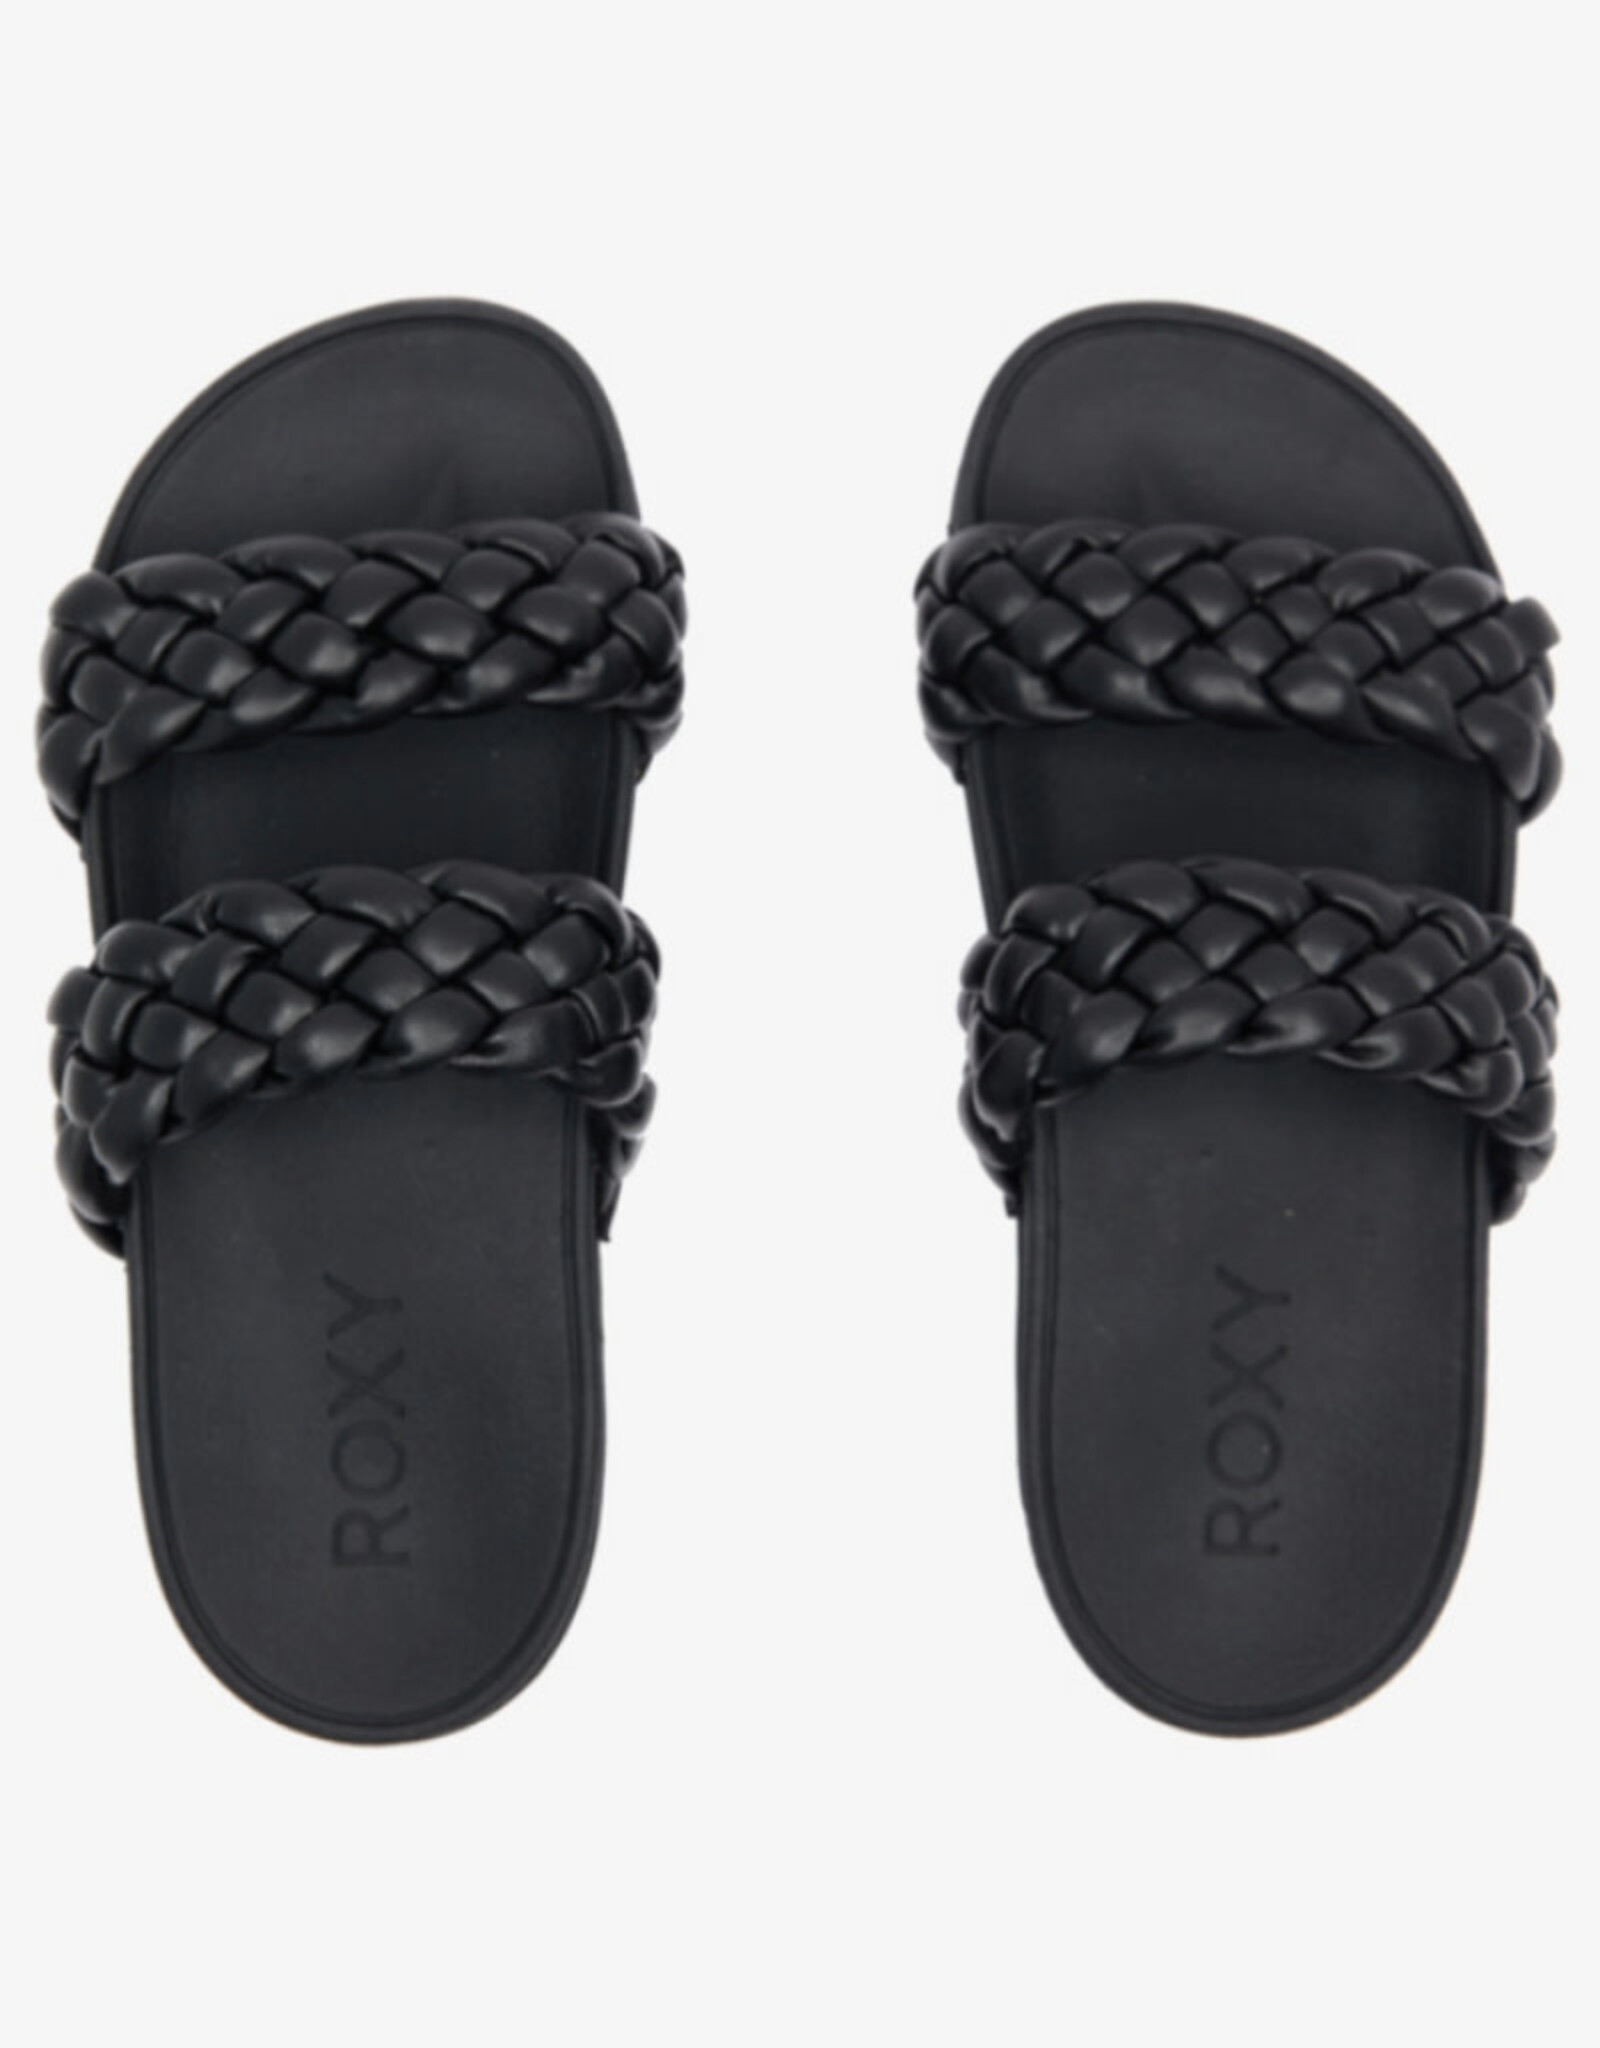 Roxy Roxy Slippy Braided Sandals Black